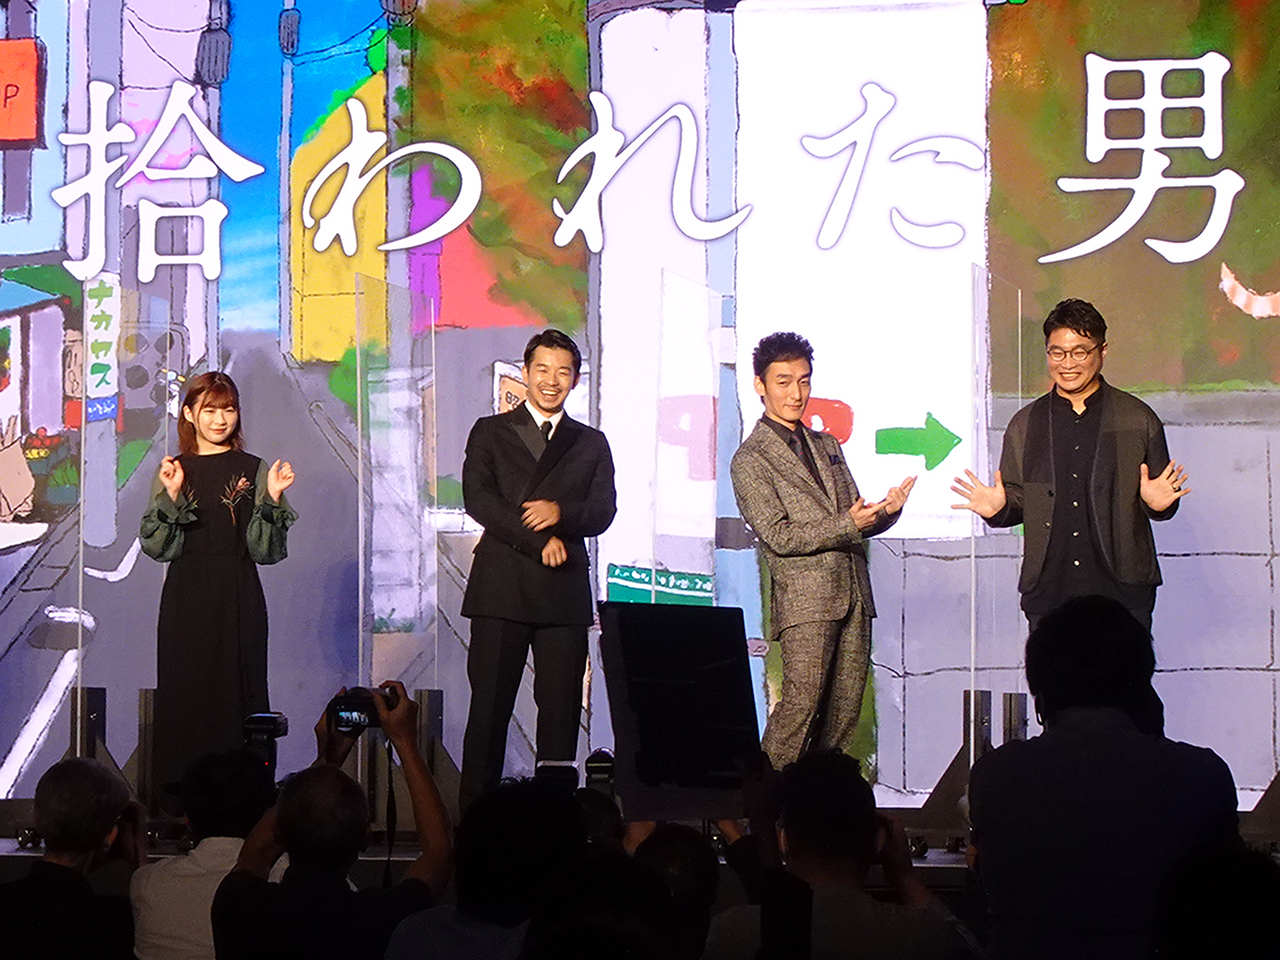 左から、「拾われた男」に出演する、伊藤沙莉さん、仲野太賀さん、草なぎ剛さん、原作を手掛けた松尾諭さん